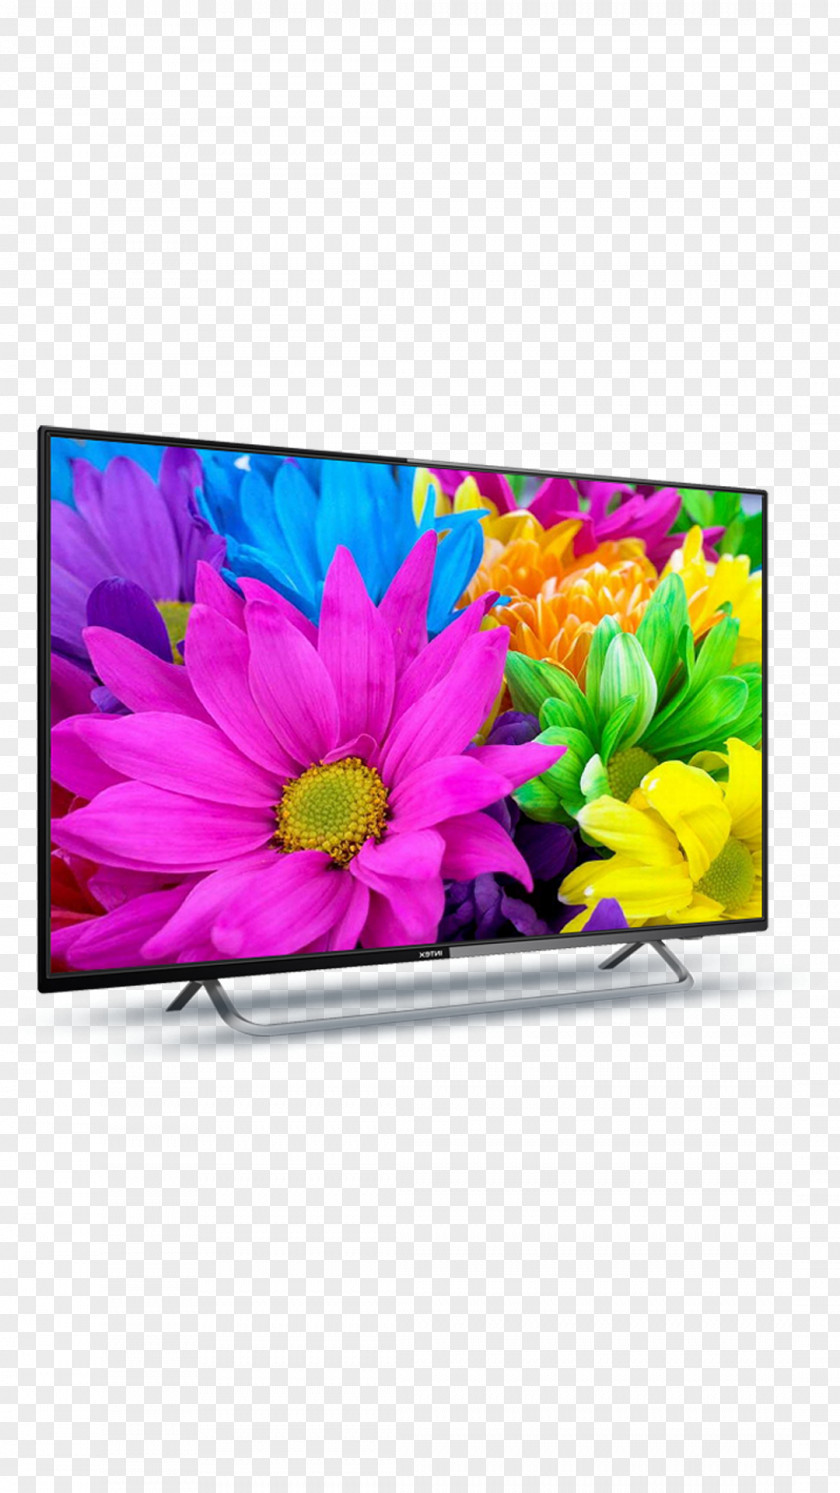 Led Tv LED-backlit LCD High-definition Television 1080p Smart TV PNG